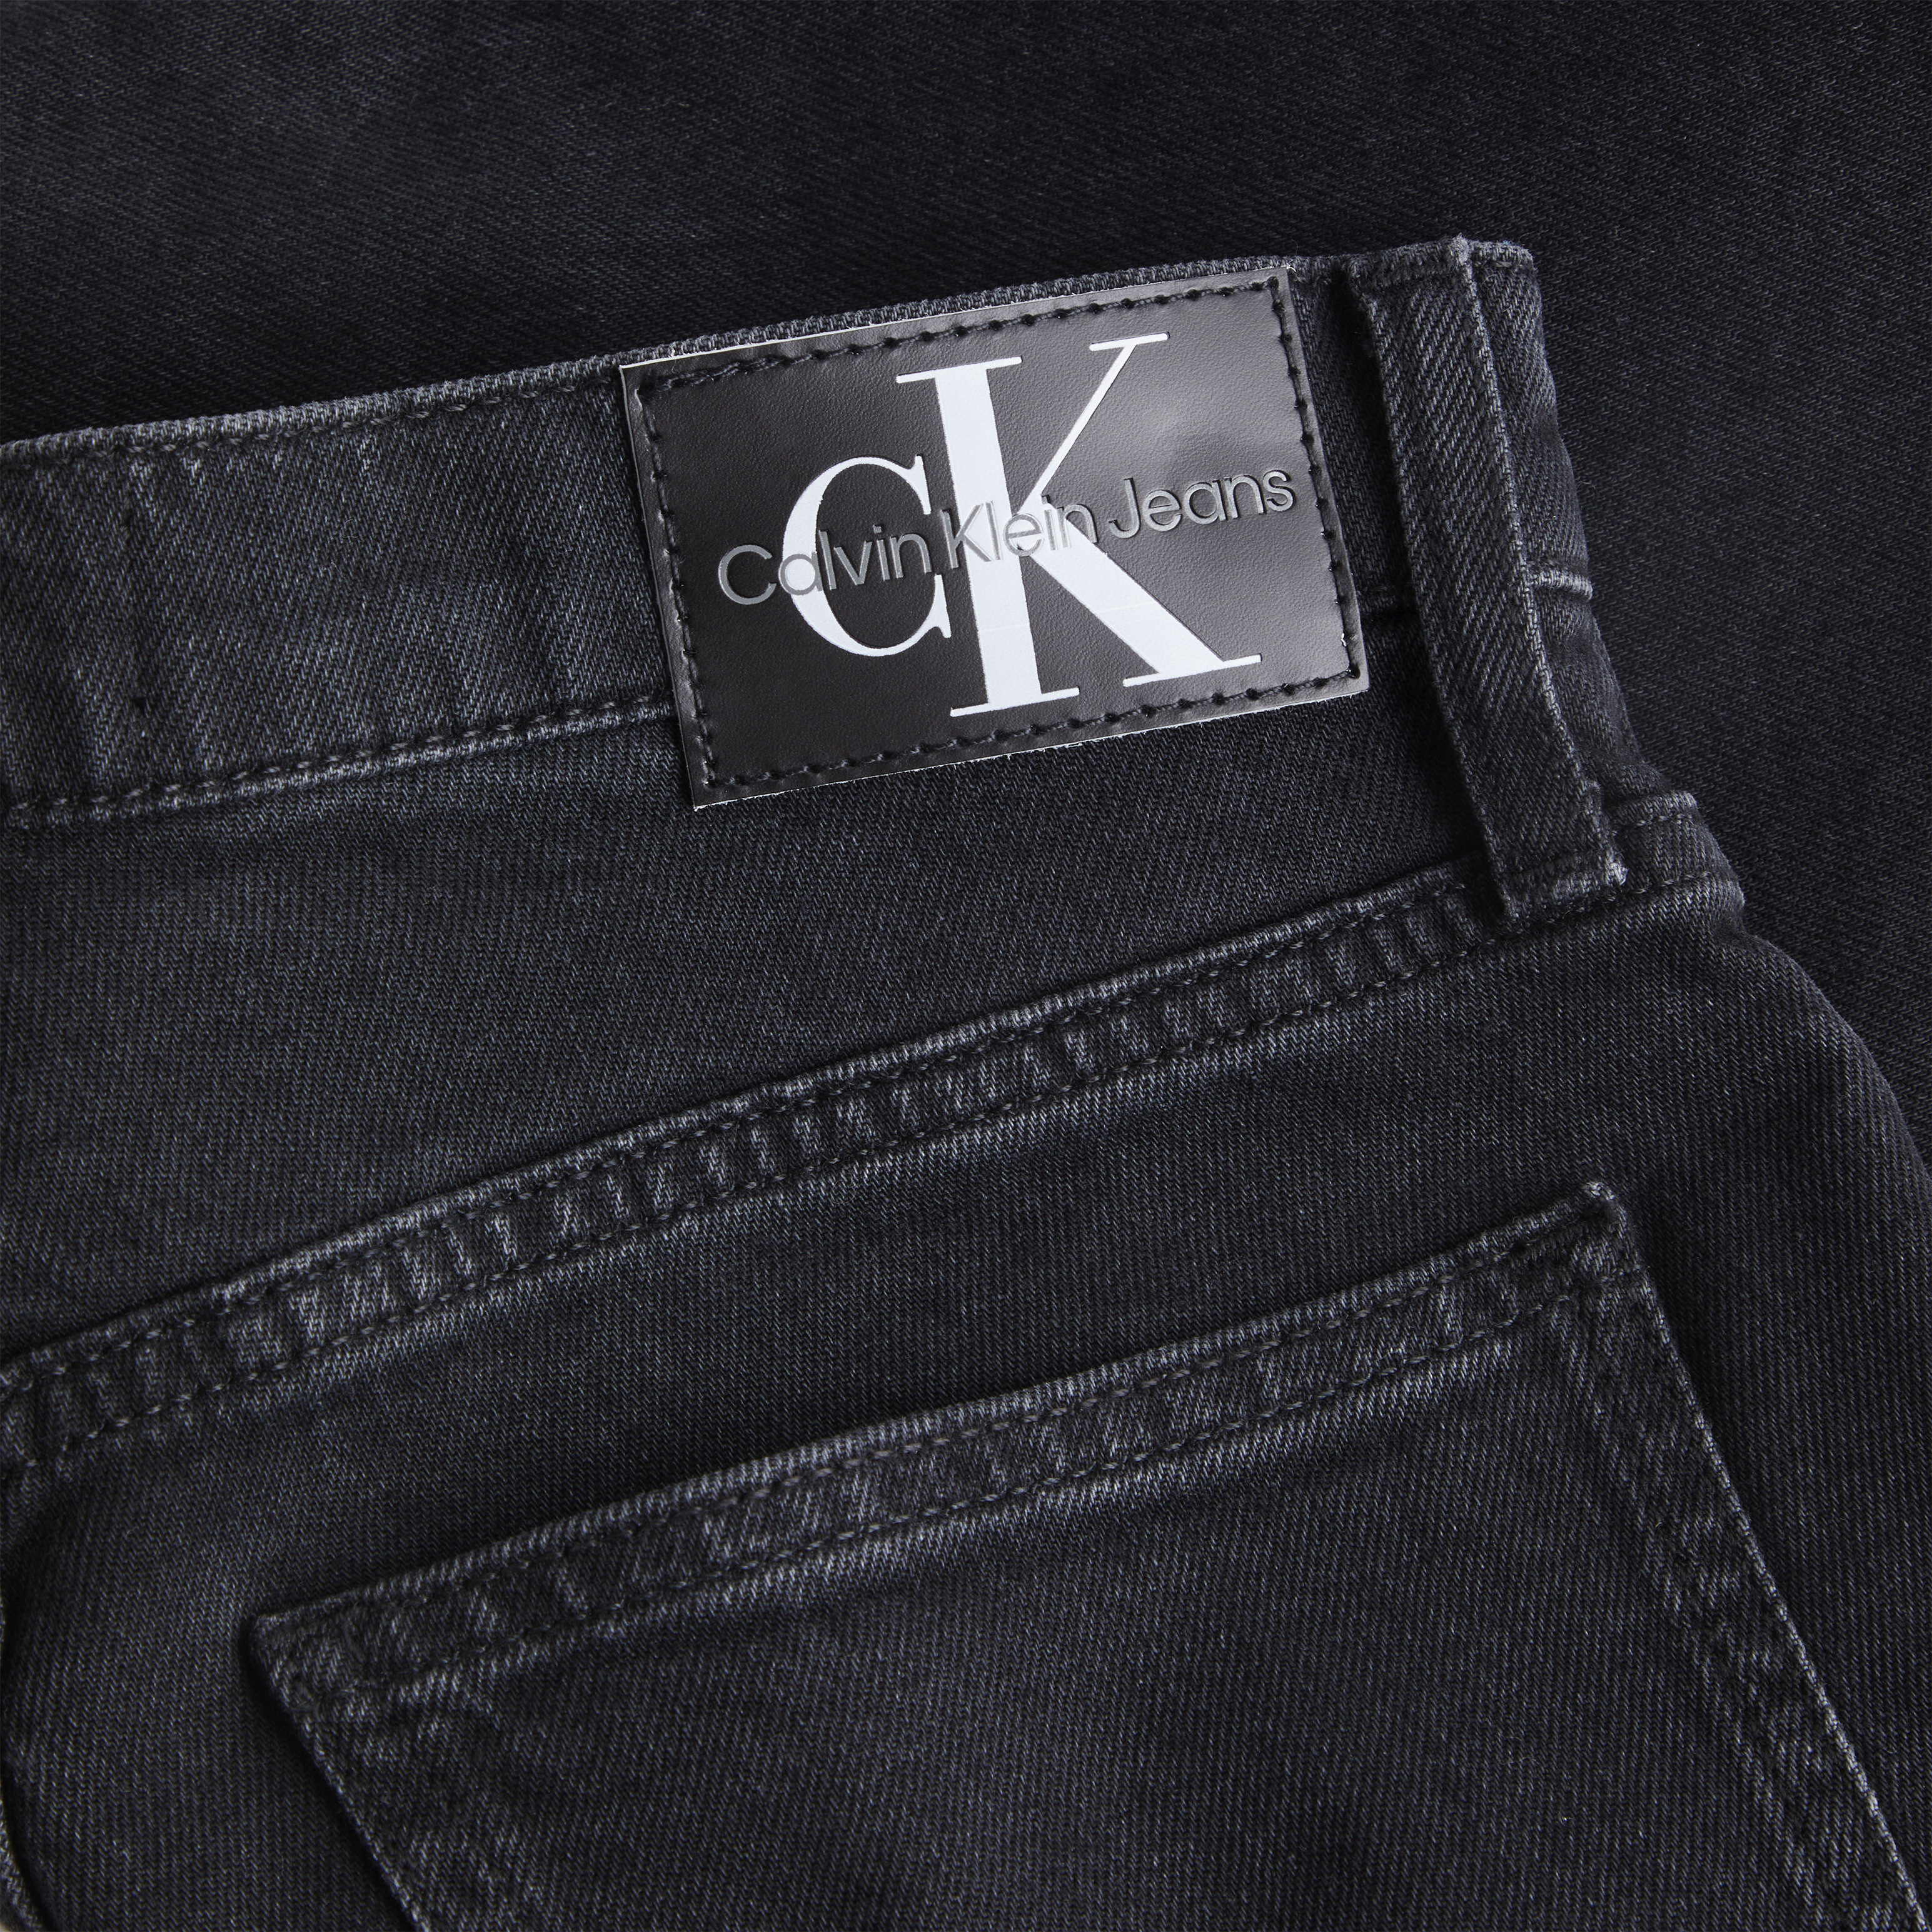 Calvin Klein Jeans - Denim shorts, Black, large image number 2